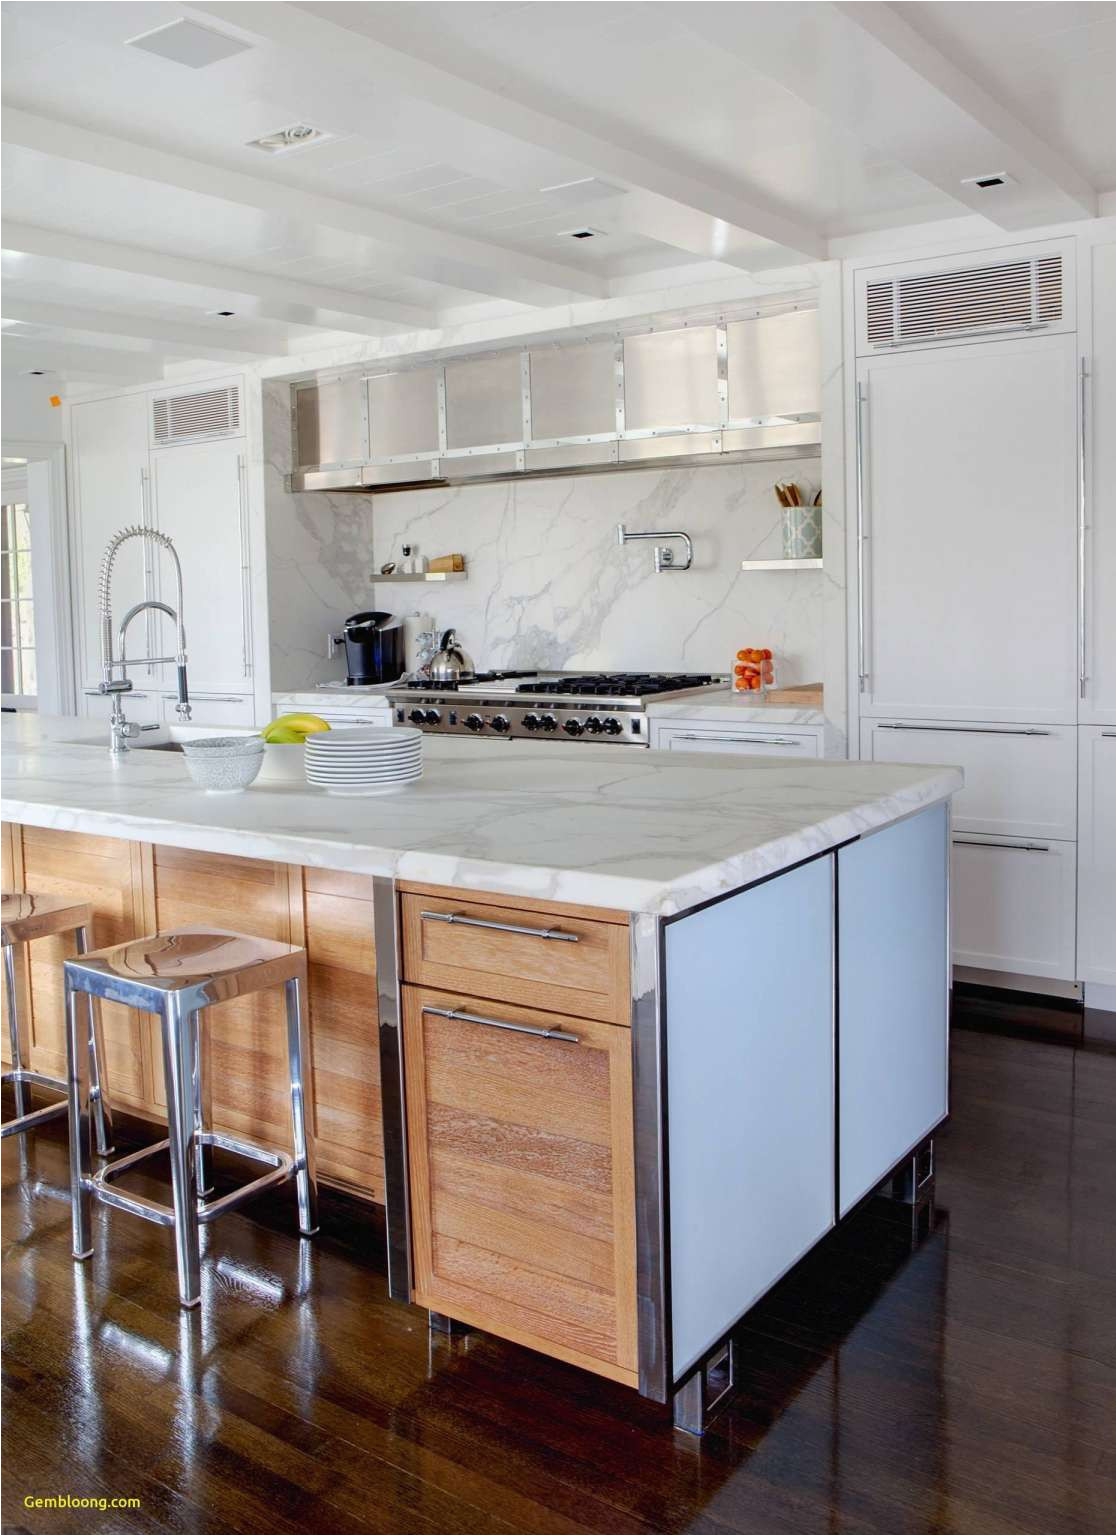 Kitchen island Design Ideas Luxury New Kitchen Design Ideas Cabinets Refacing 0d Design Ideas Refinish